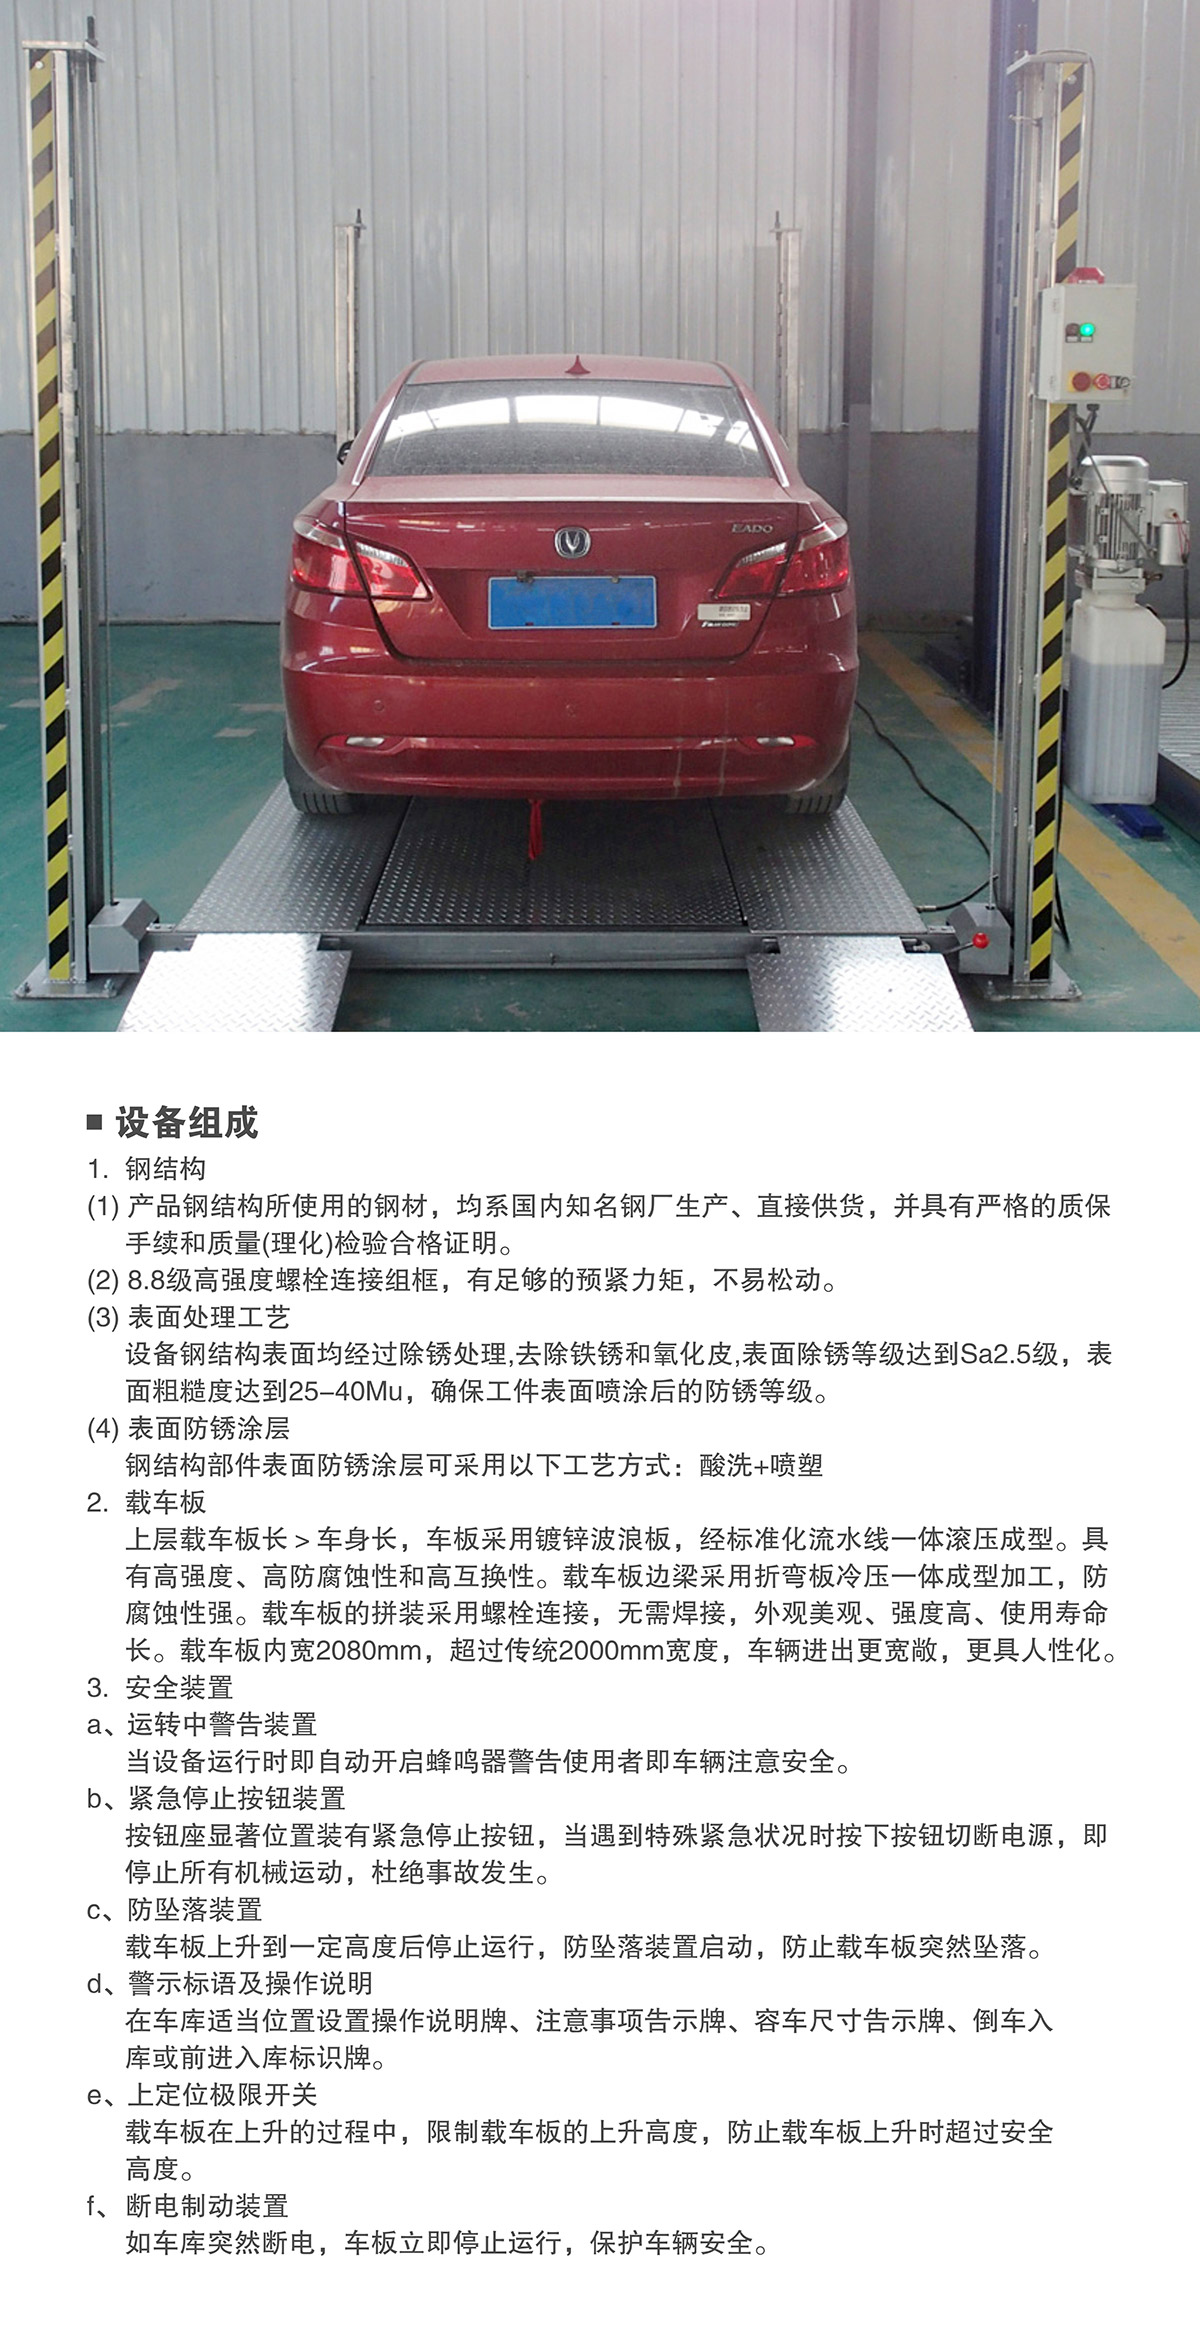 贵州四柱简易升降立体停车设备组成.jpg